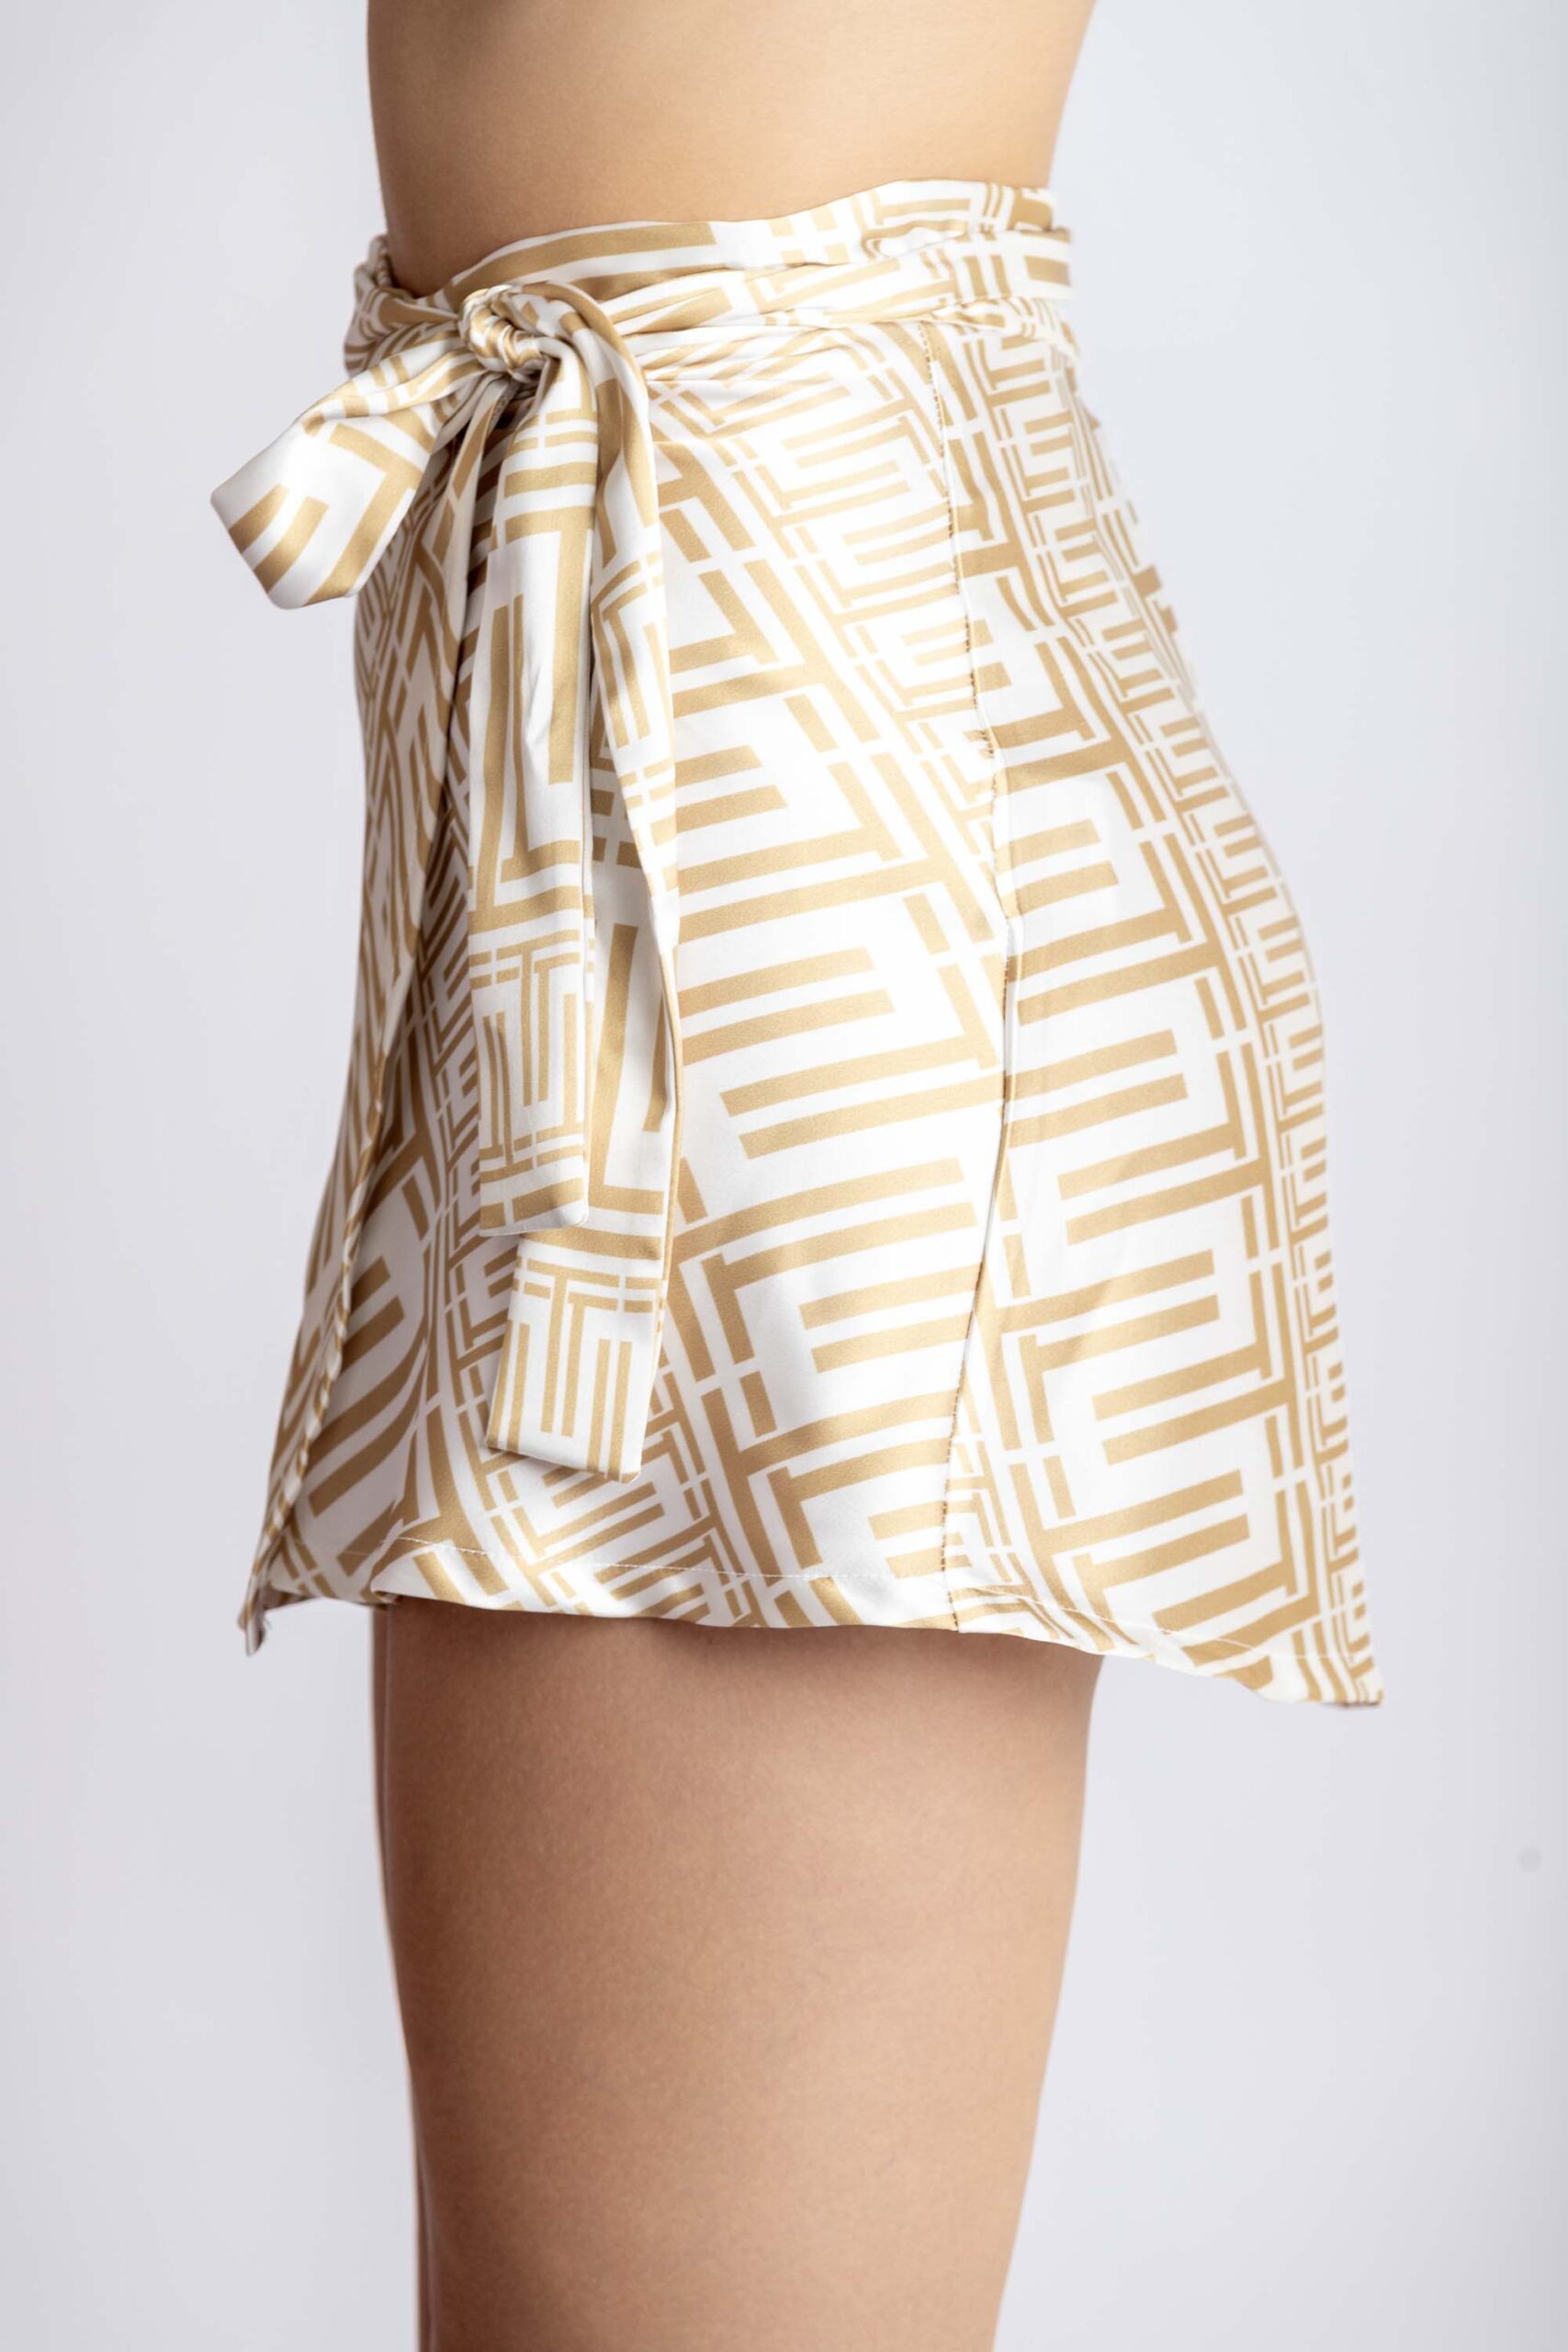 Mini wrap-around skirt, with triamia print on, side.